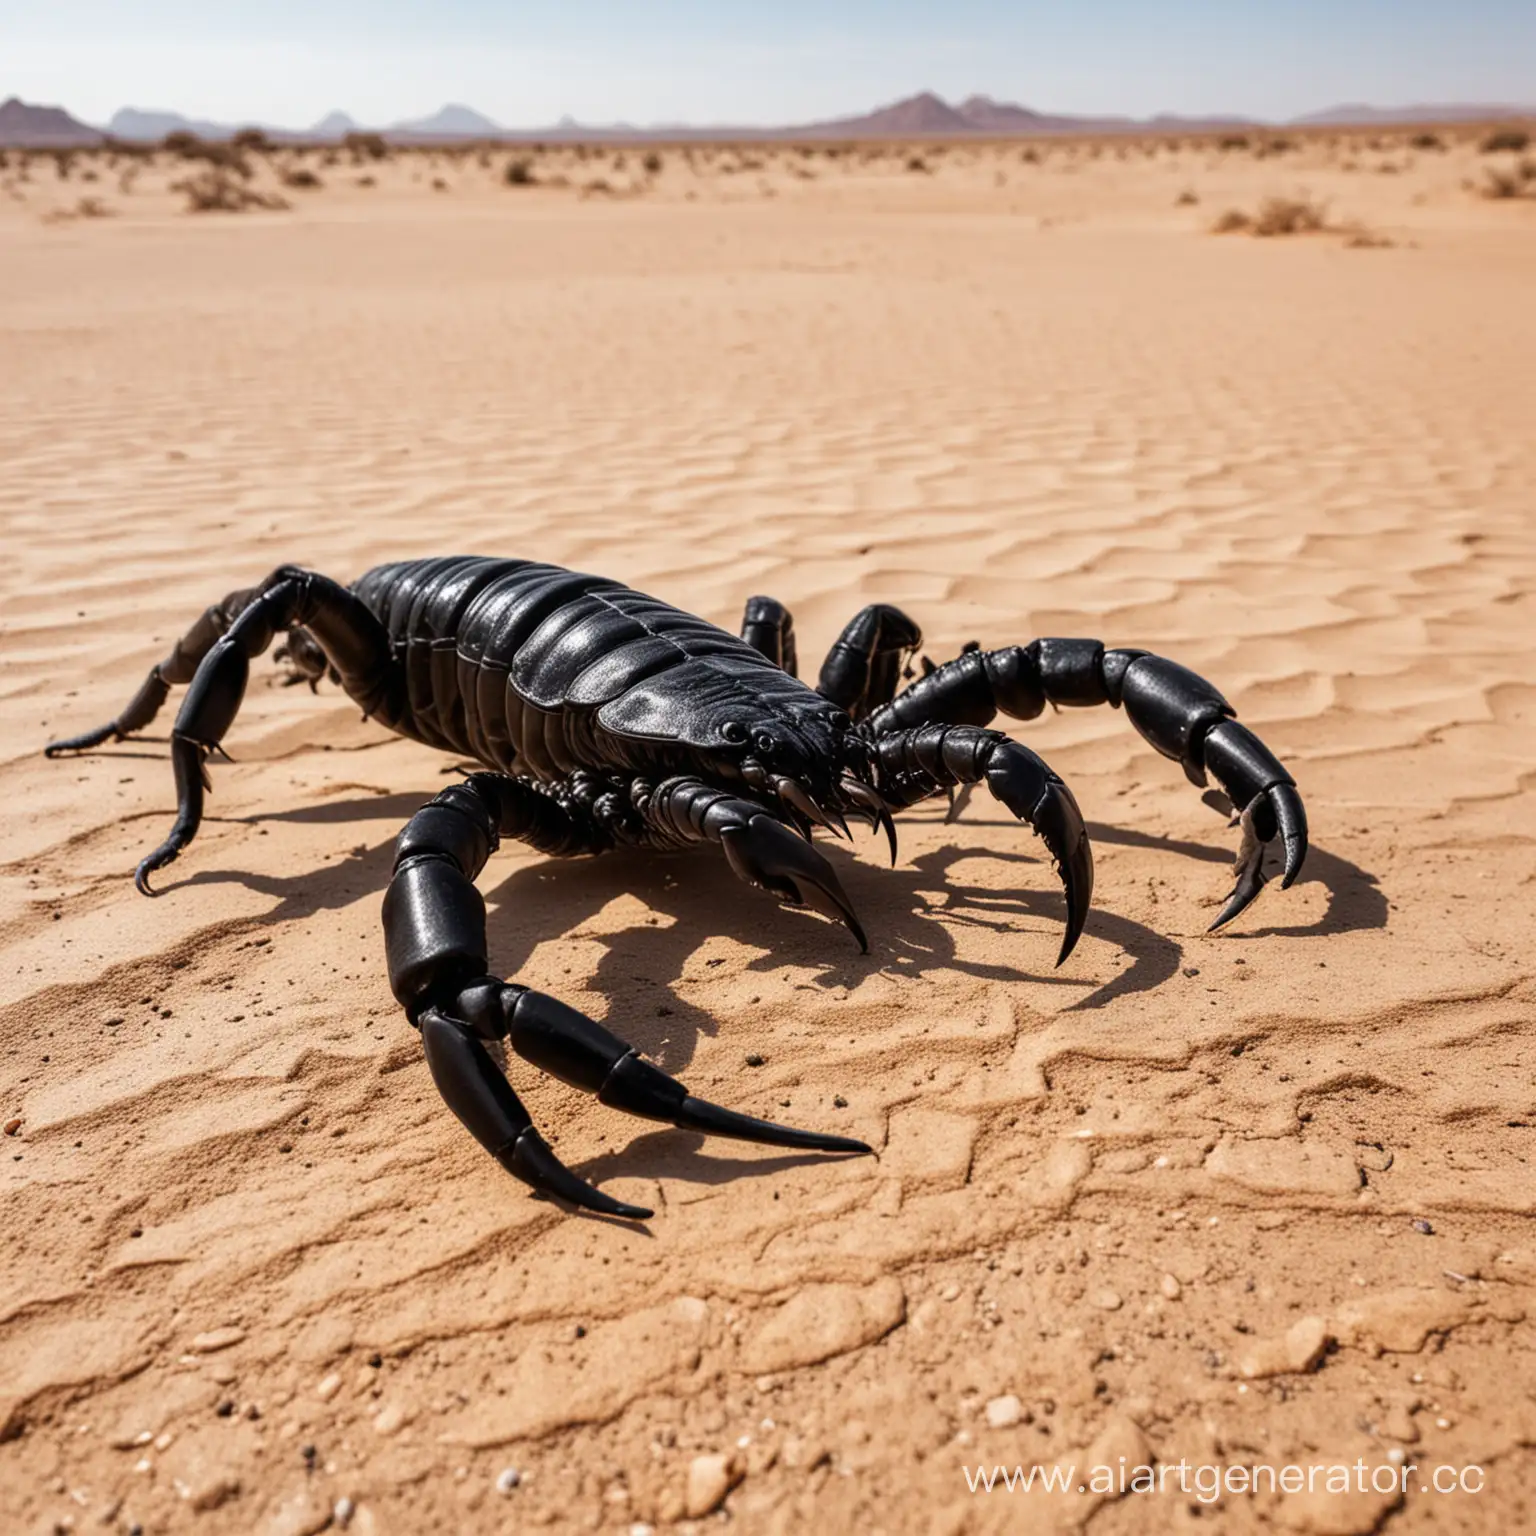 Giant-Black-Scorpion-in-Desert-Landscape